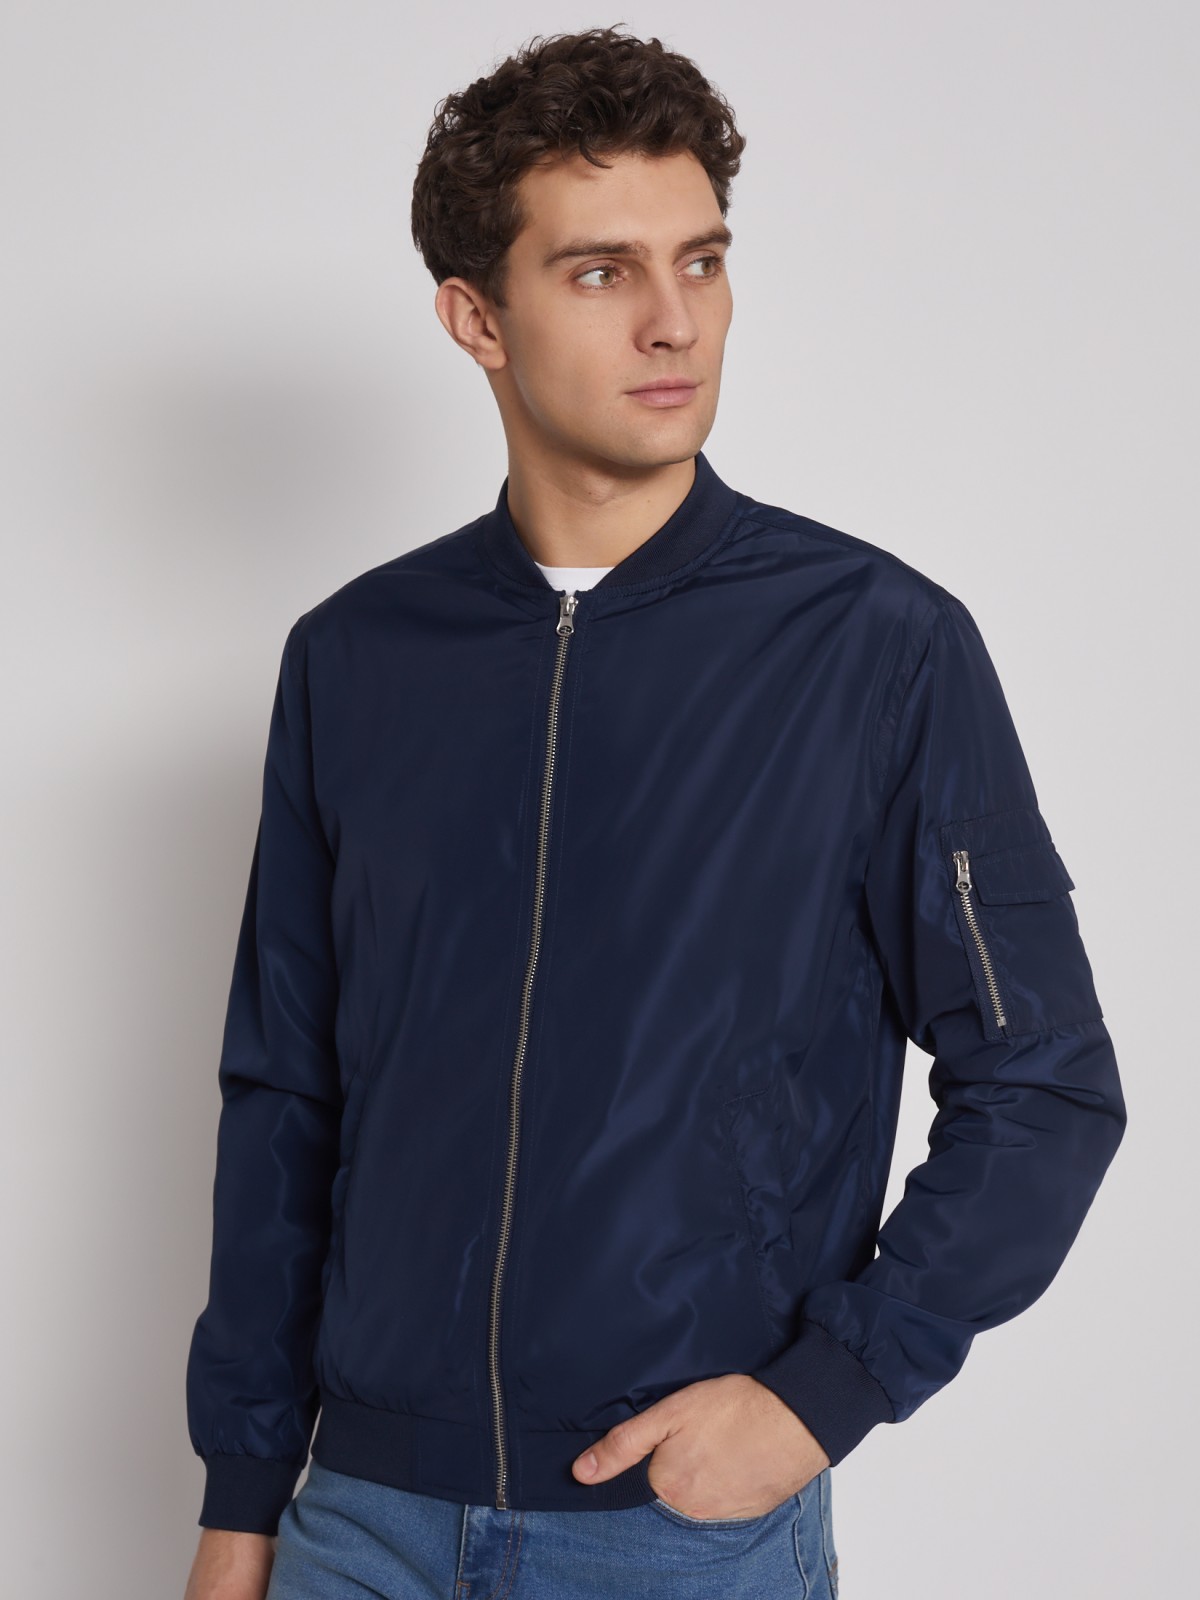 Куртка-бомбер zolla 012215614024, цвет темно-синий, размер M